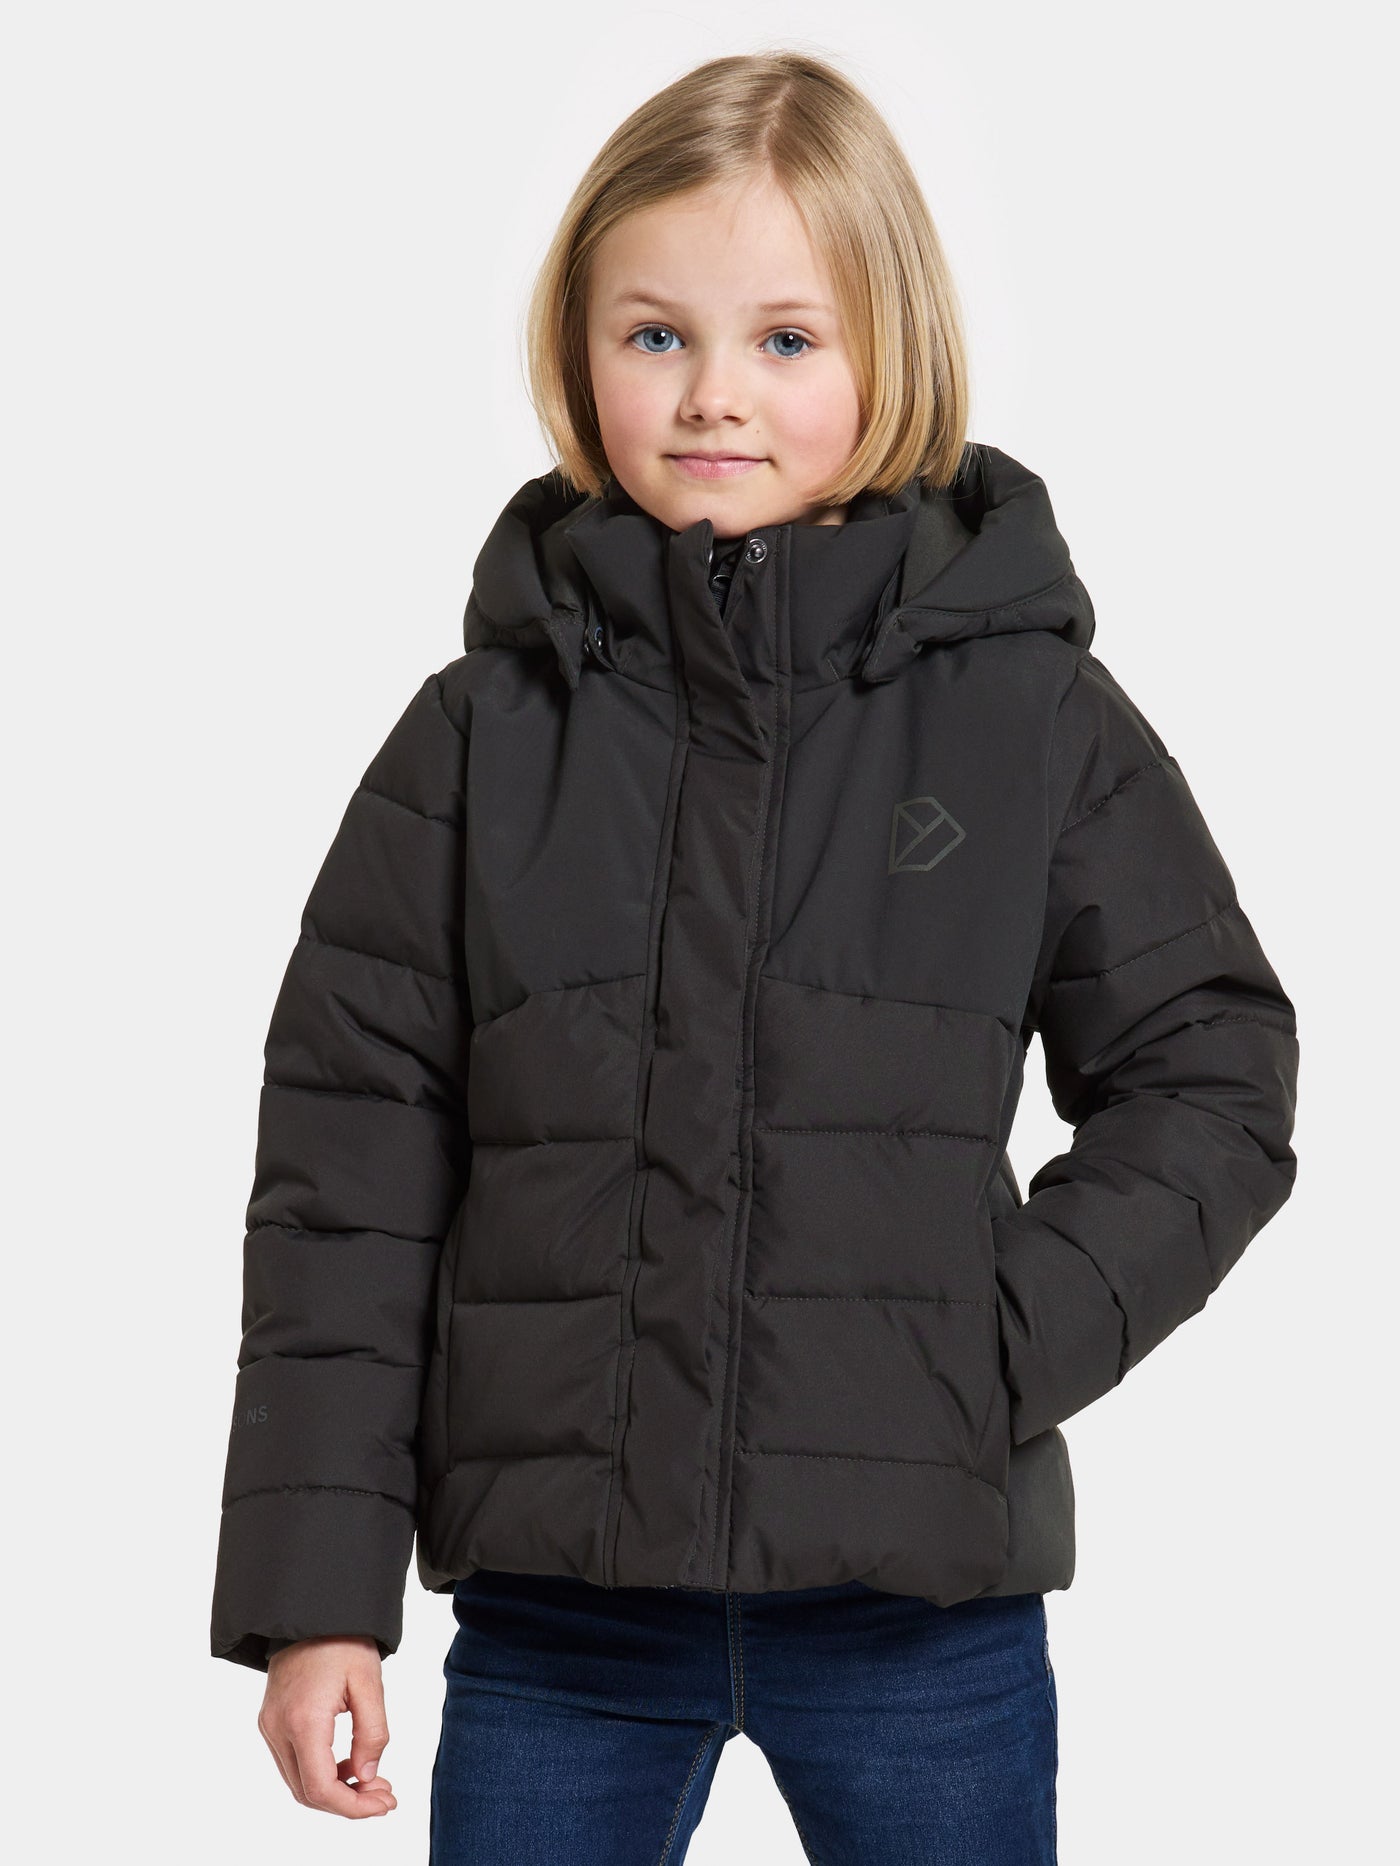 Ryolit Kids' Jacket - Top-Jacke für Kinder und Jugendliche